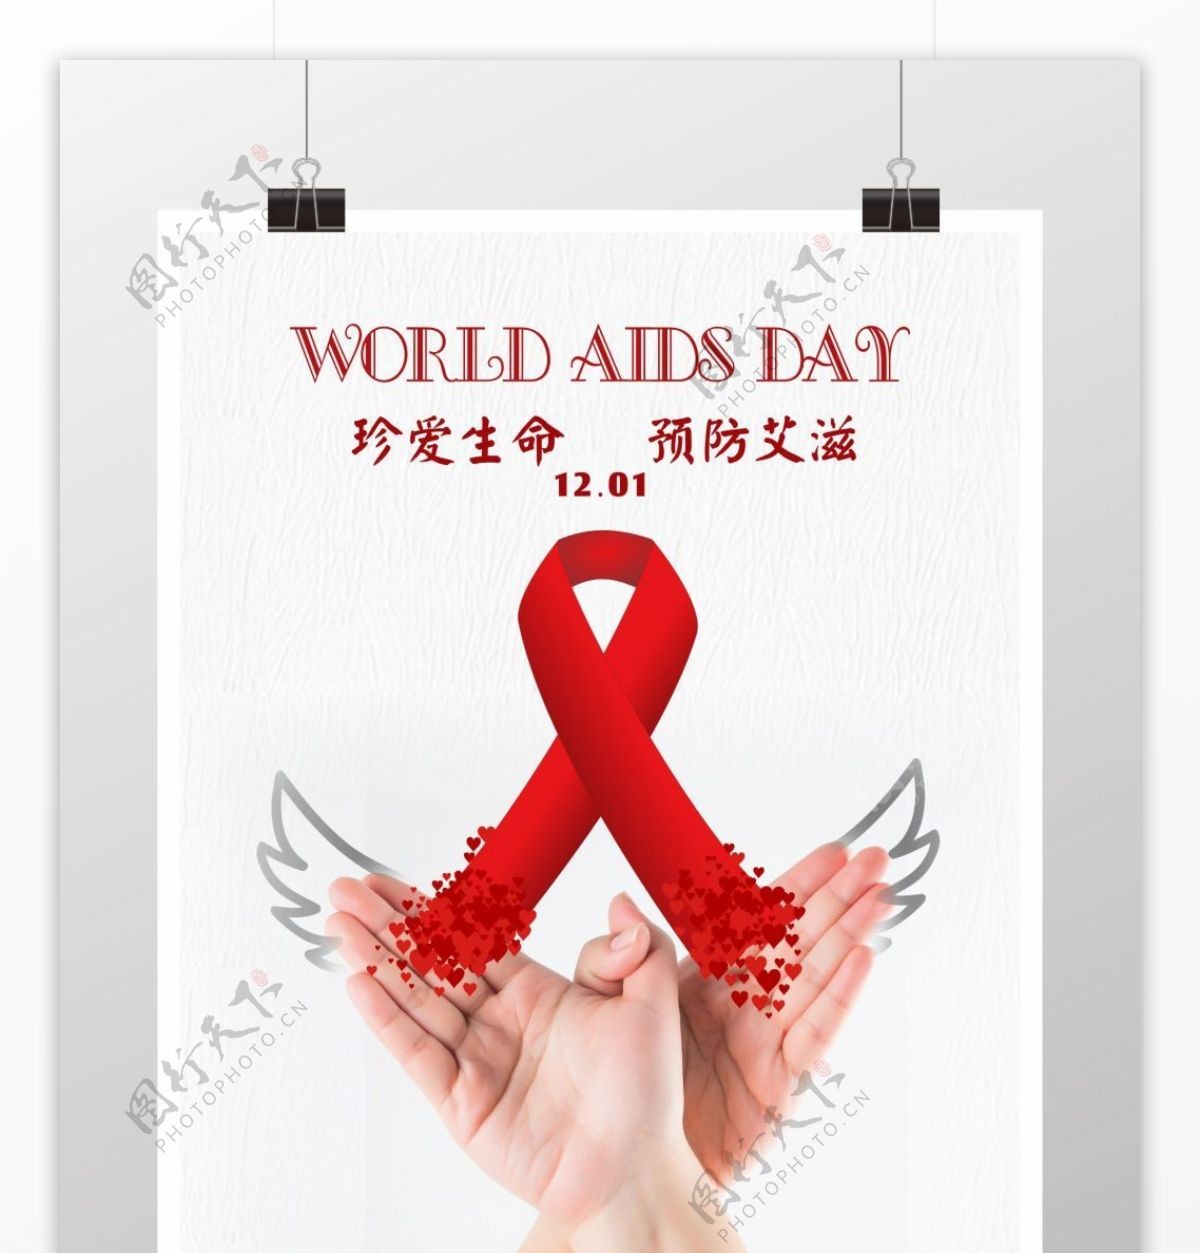 世界艾滋日公益宣传海报